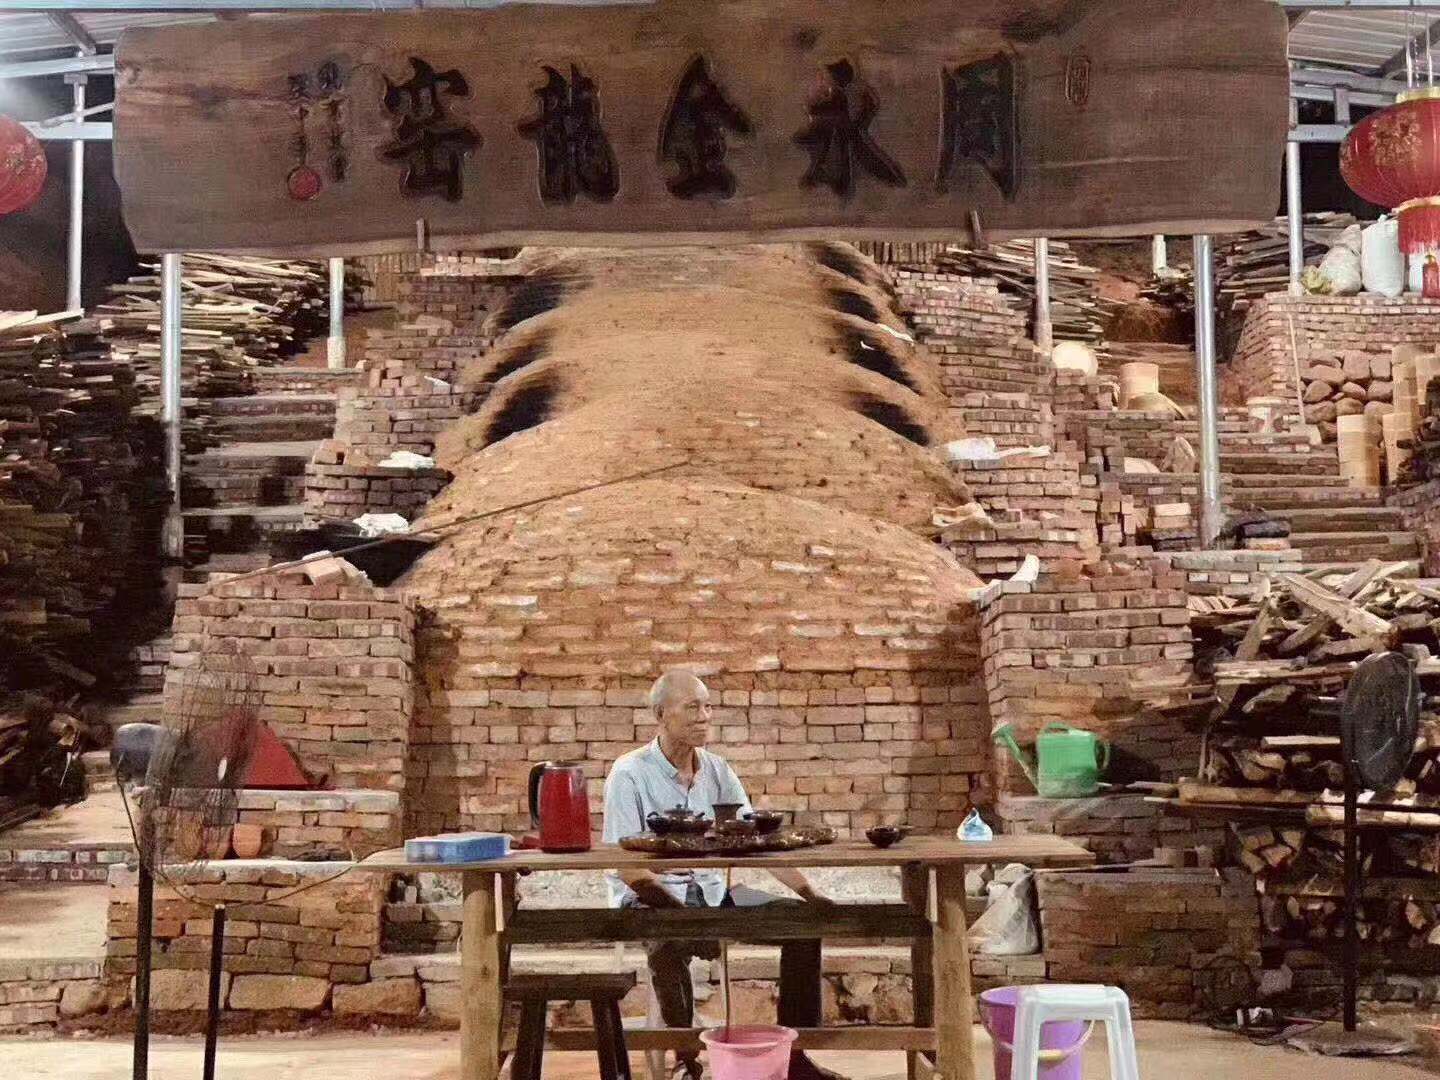 【携程攻略】景德镇古窑民俗博览区景点,见识了景德镇瓷器制作过程的各个环节工艺，有很多是需要多年练习才能…